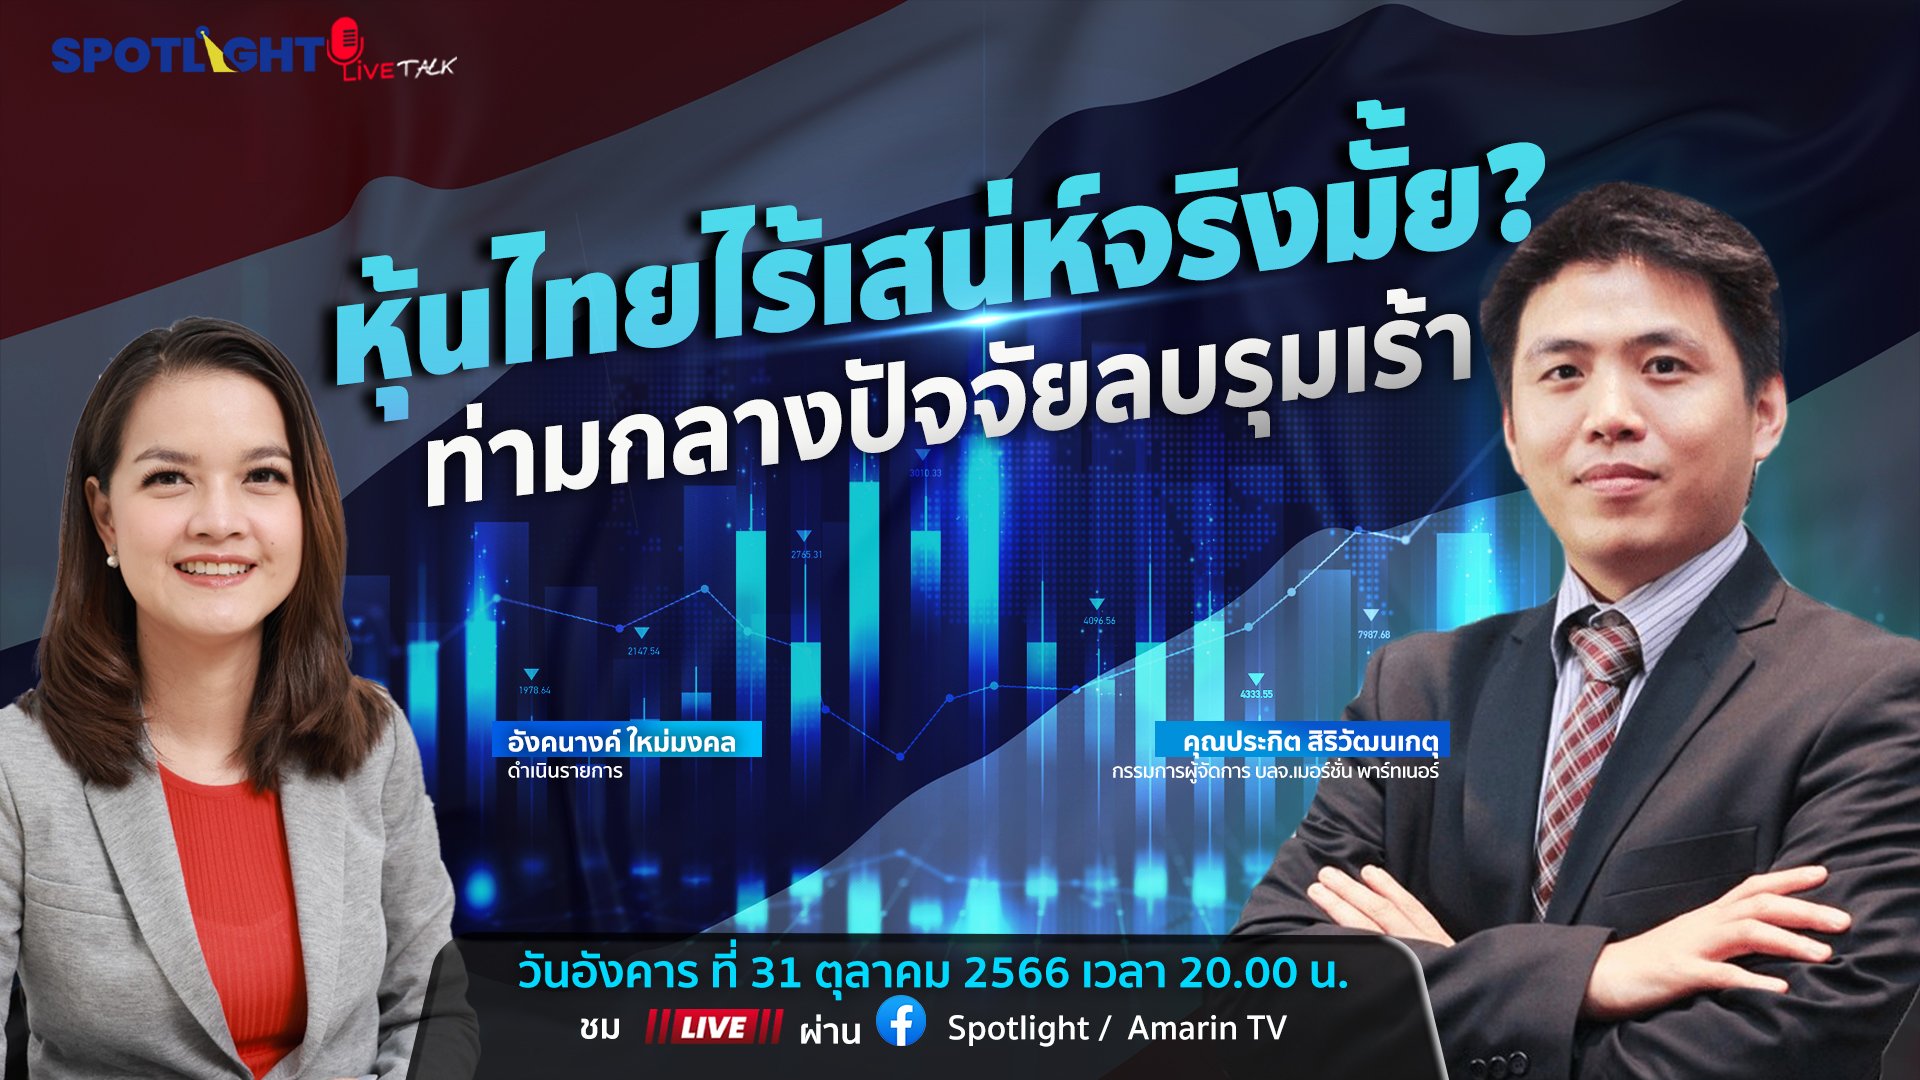 หุ้นไทยไร้เสนห์จริงมั้ย? ท่ามกลางปัจจัยลบรุมเร้า | Spotlight | 2 พ.ย. 66 | AMARIN TVHD34